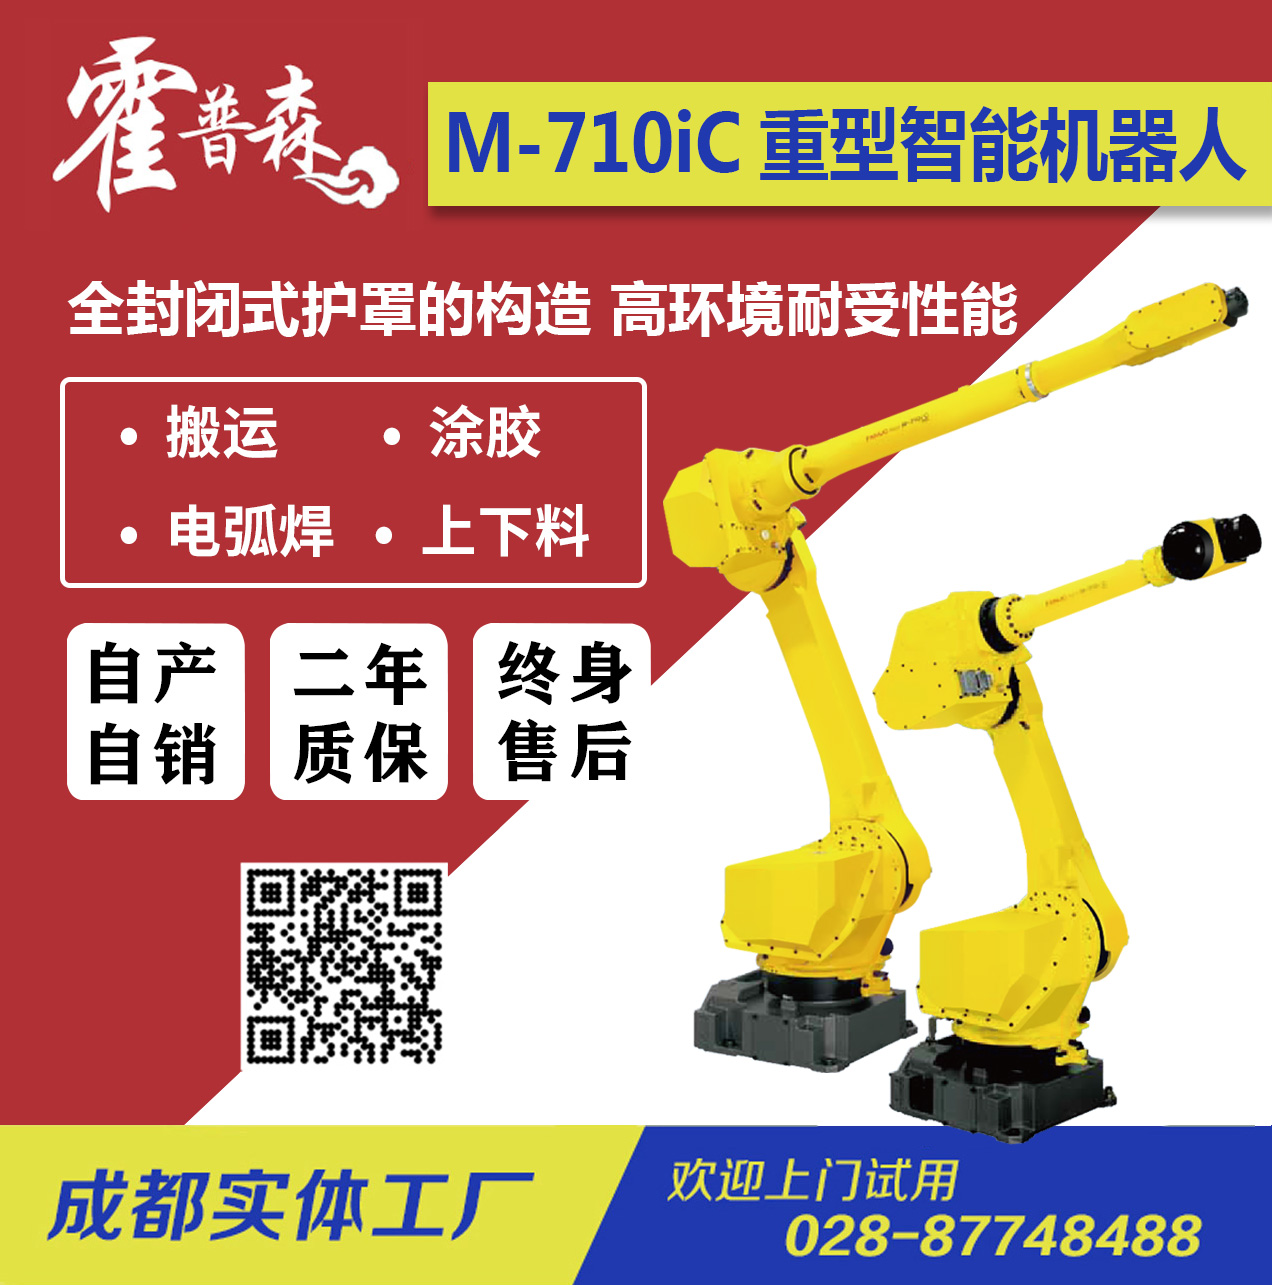 FANUC-Robot M-710iC /搬运/码垛/涂胶/电弧焊/中型多功能机器人